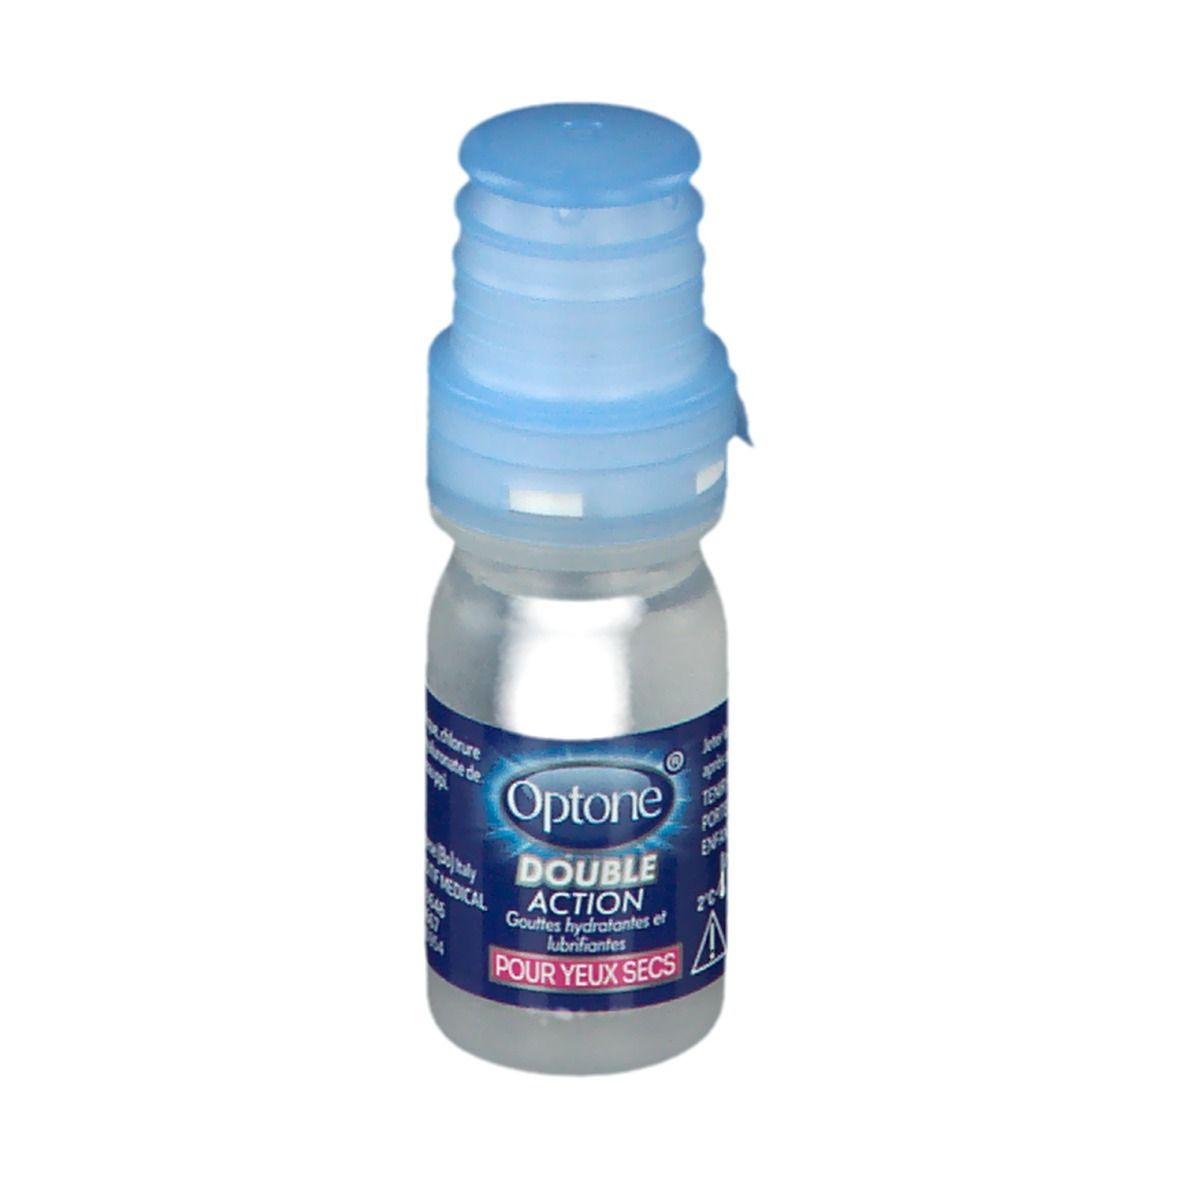 Optone® Double Action gouttes hydratantes et lubrifiantes